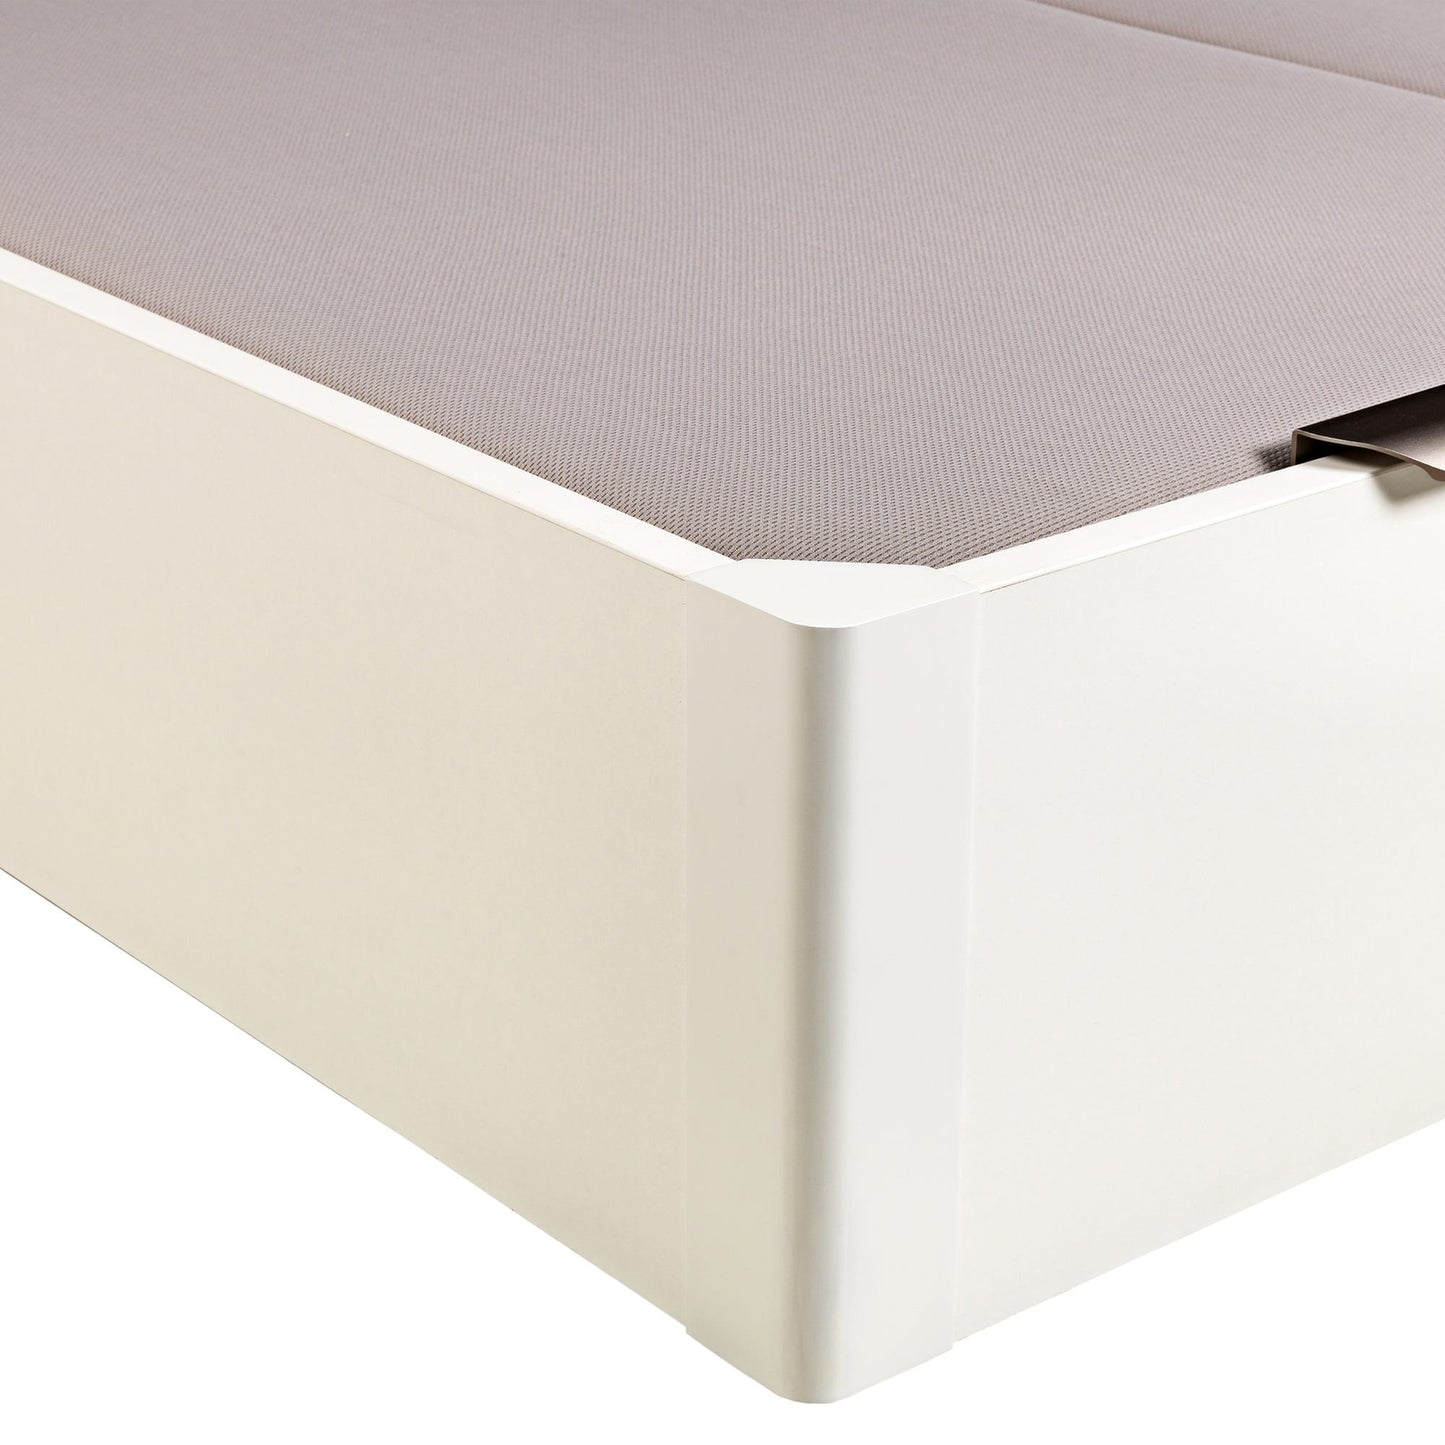 Canapé abatible de madera de tapa doble de color blanco - DESIGN - 180x210